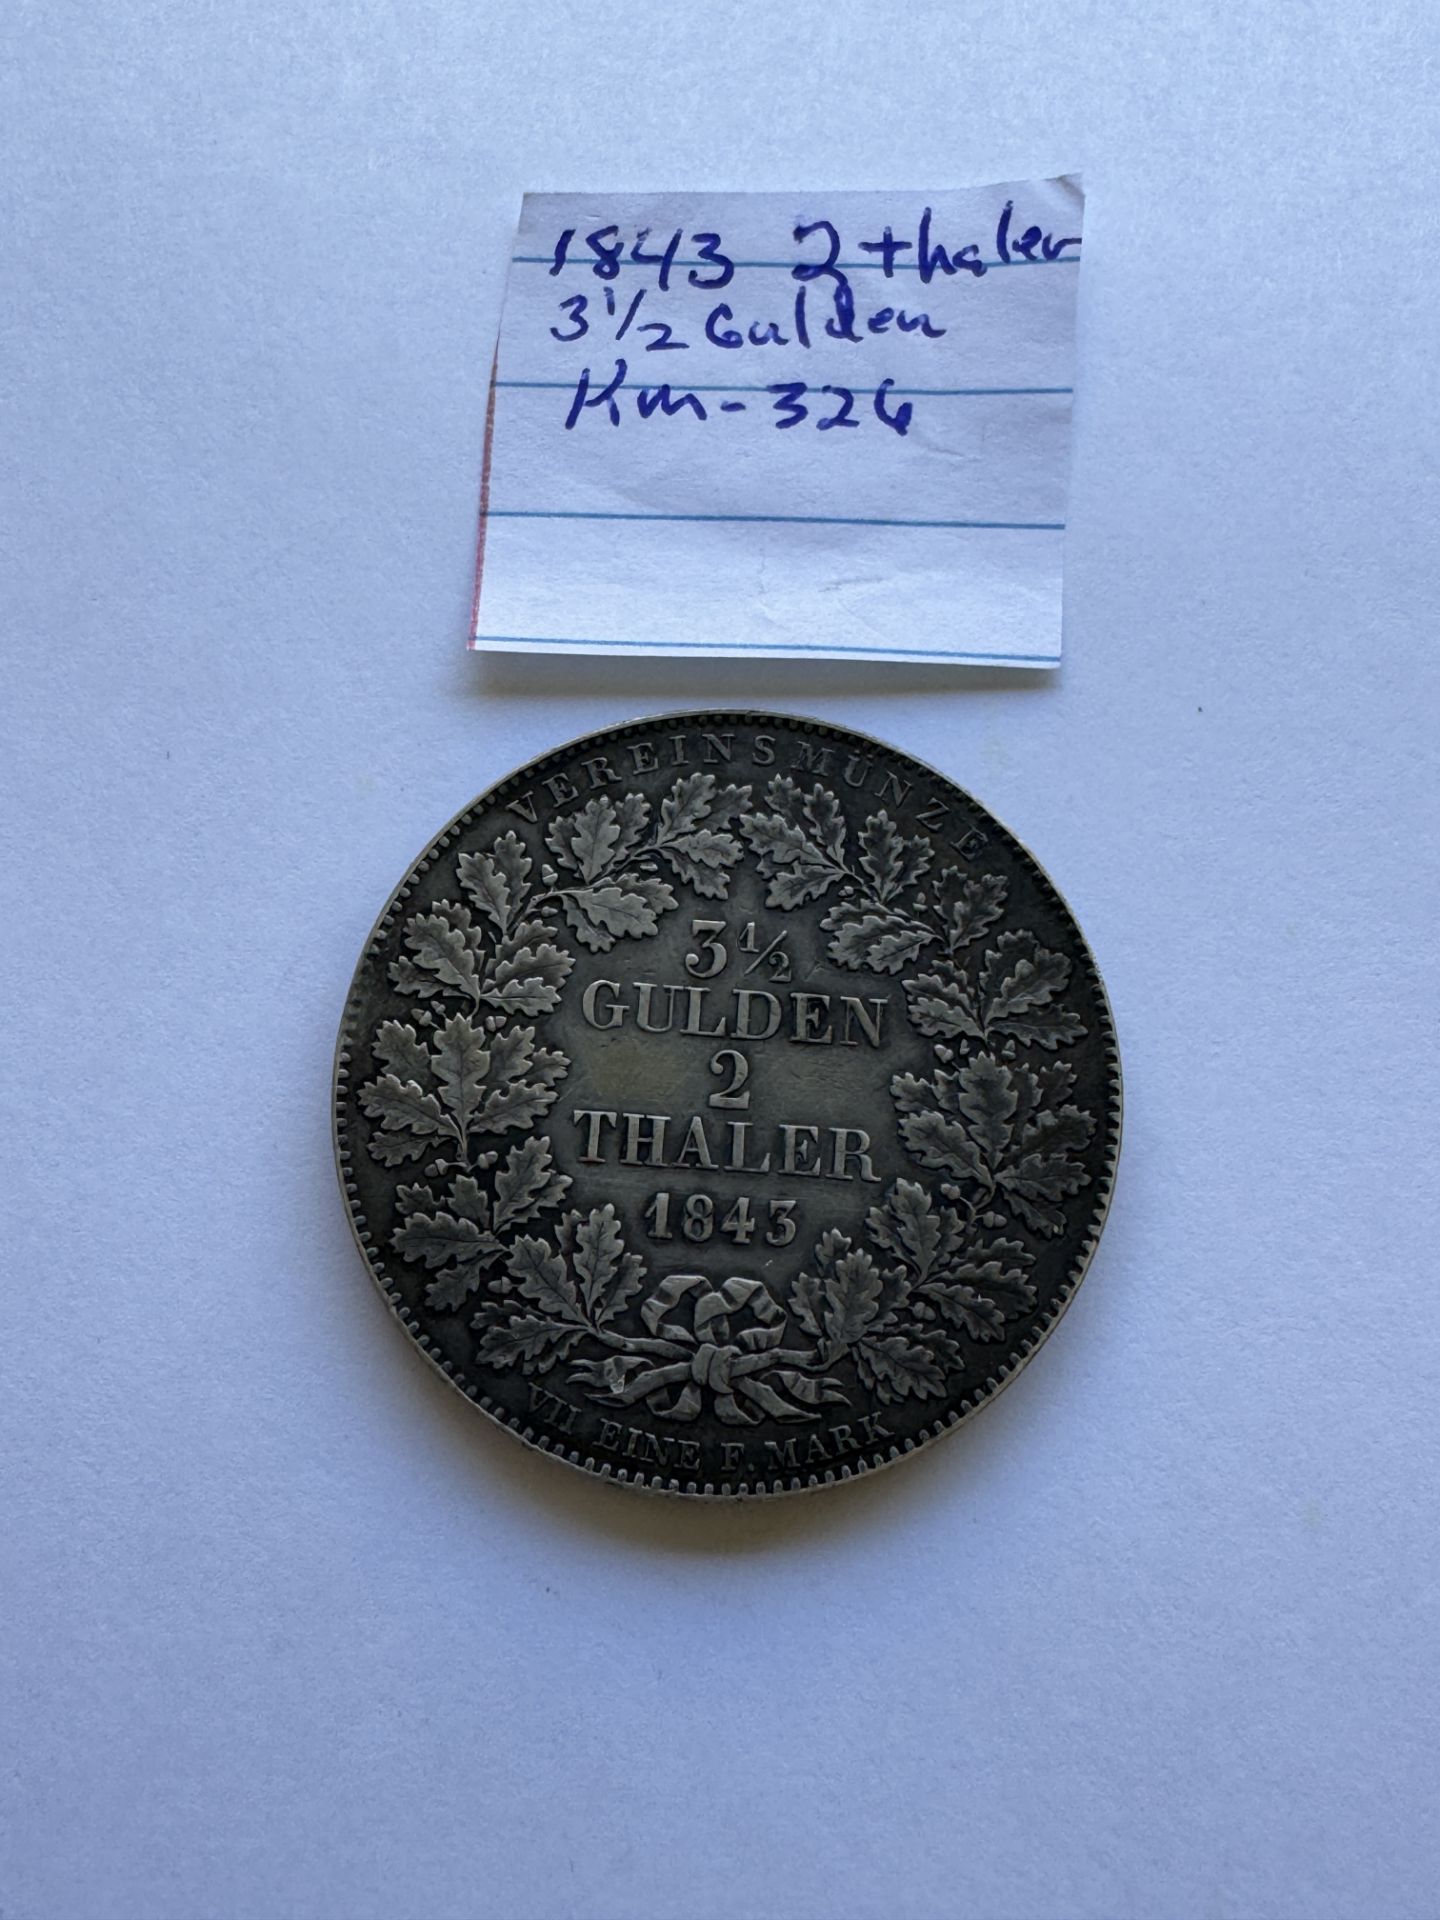 1843 3-1/2 GULDEN - 2 THALER FRANKFURT COIN - Image 2 of 2